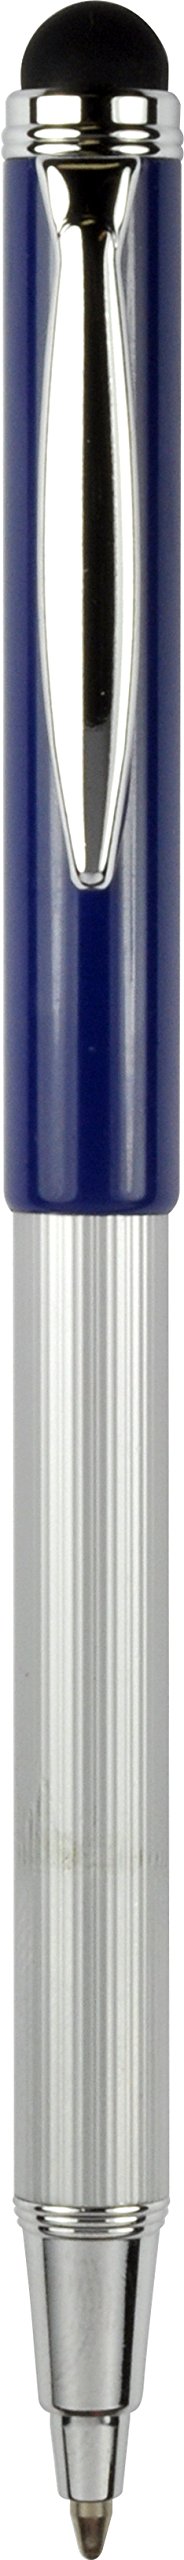 Bolígrafo telescópico Zebra Pen 33602 Styluspen/lápiz óptico, tinta negra, azul/gris - Imagen 1 de 1